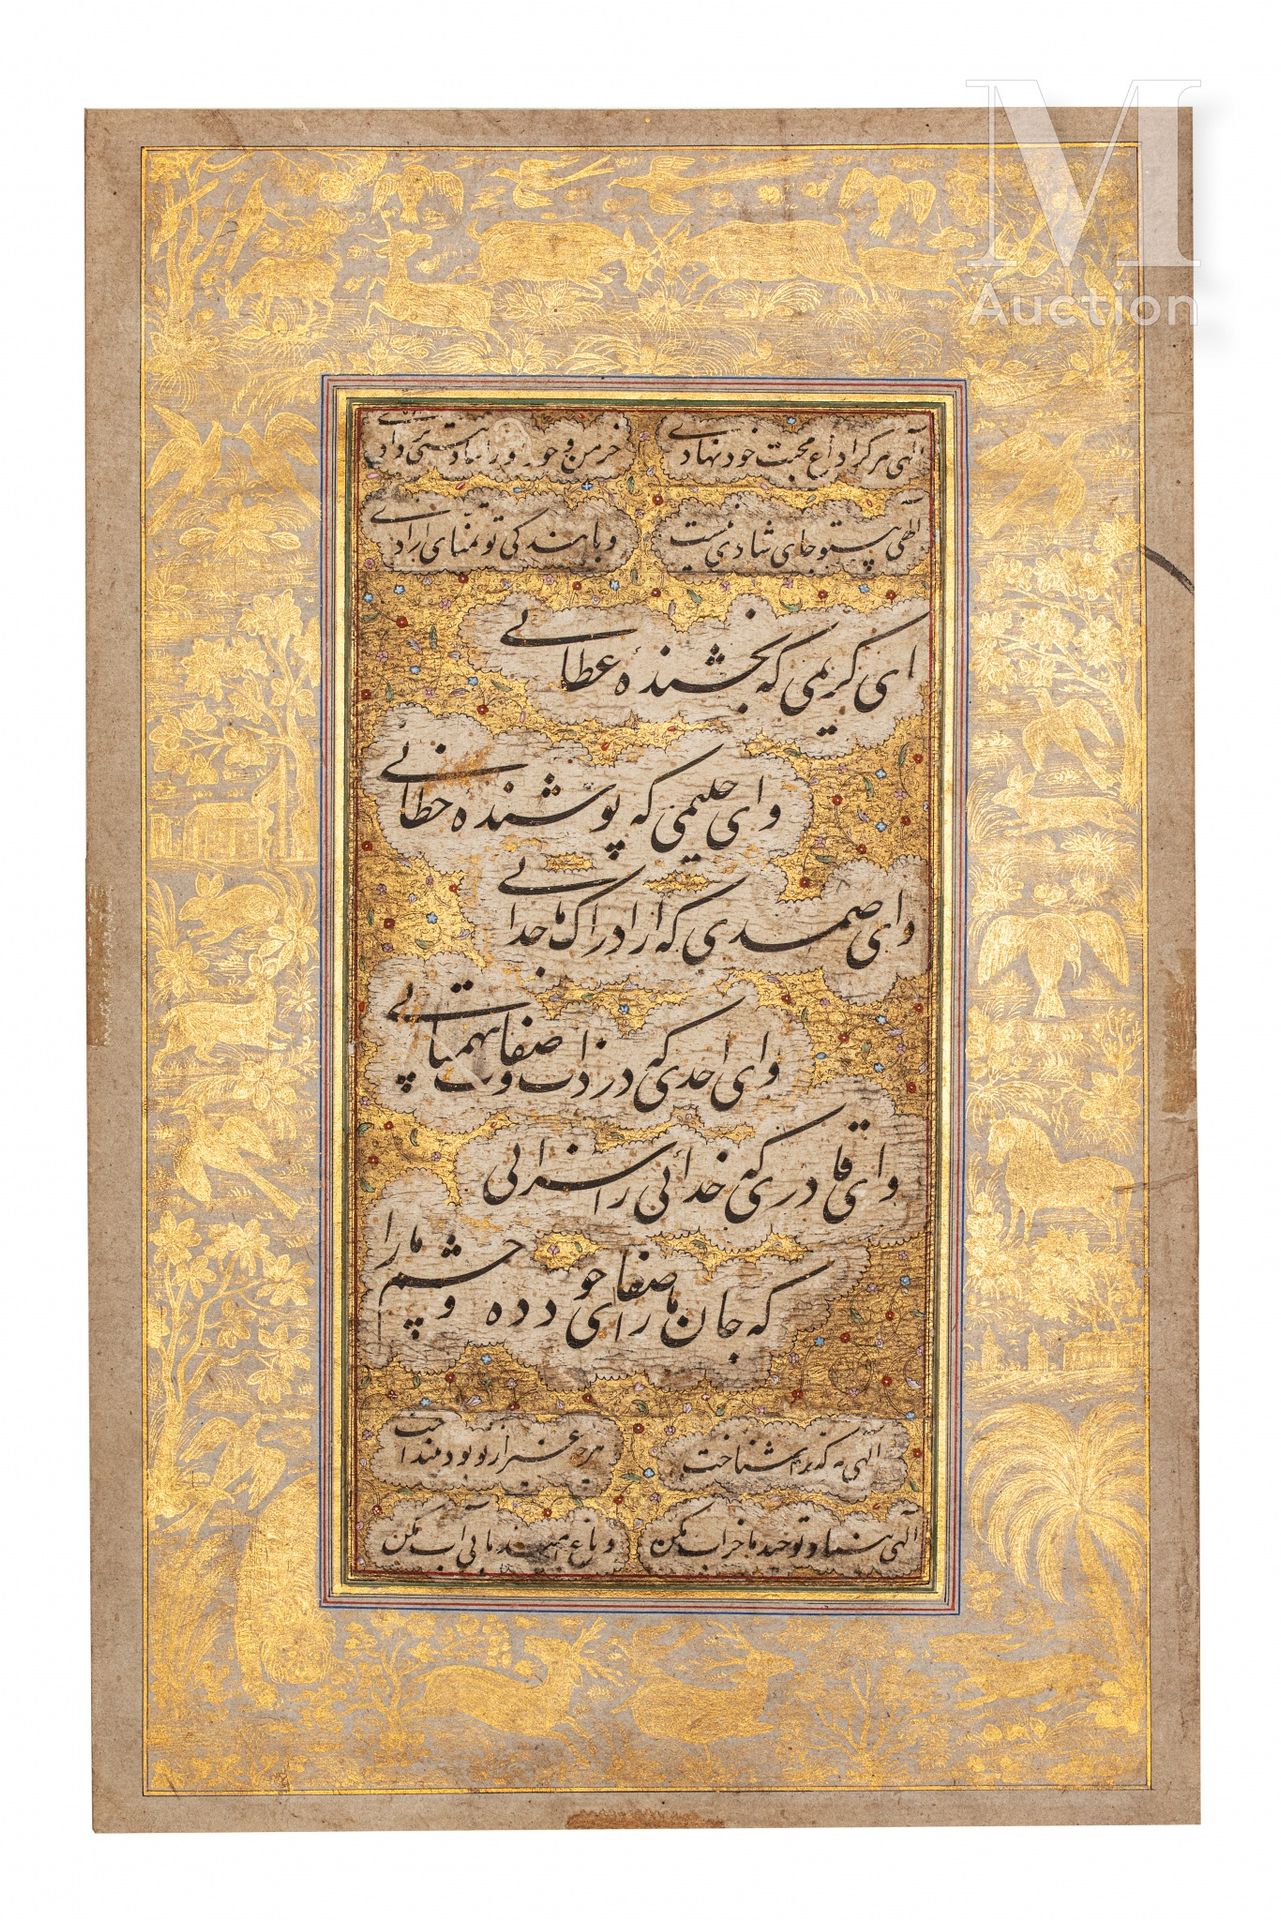 Calligraphie moghole India, 18° secolo

Pagina d'album, composta da calligrafia &hellip;